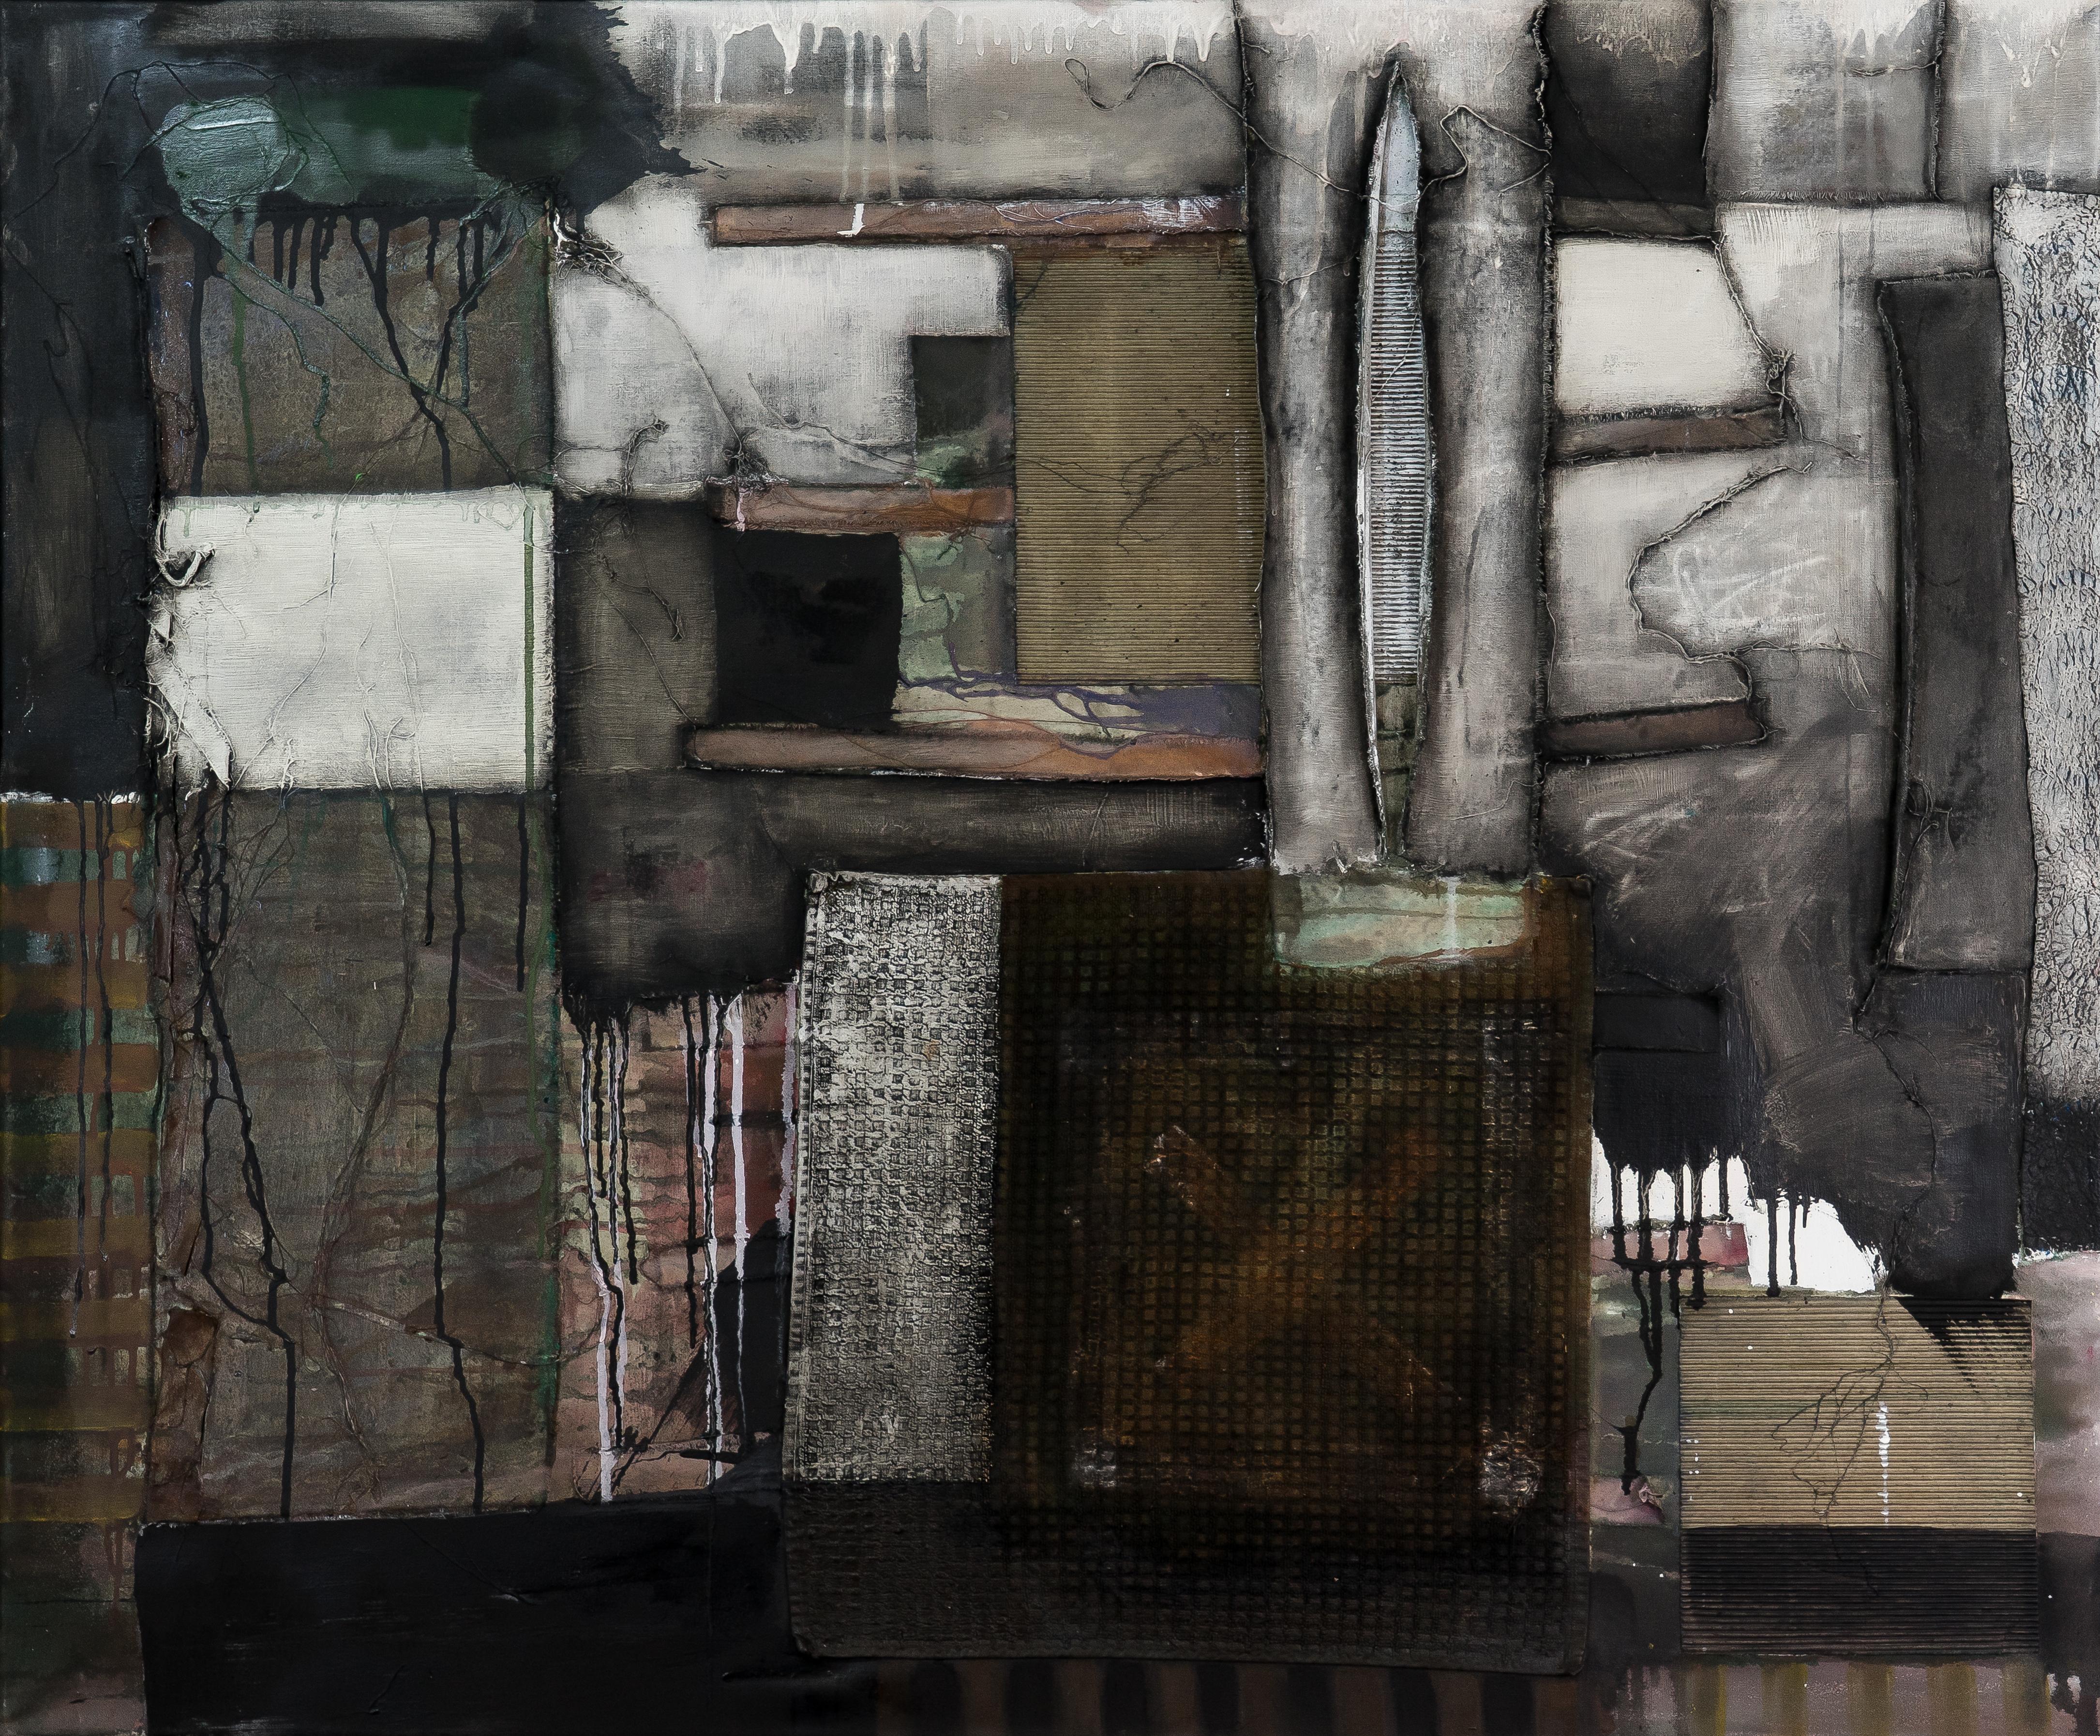 Peinture « Next Generation 3 » (prochaine génération) - Peinture abstraite, grise, noire, peinture à l'huile, XXIe siècle - Mixed Media Art de MASCH (Manfred Schulzke)